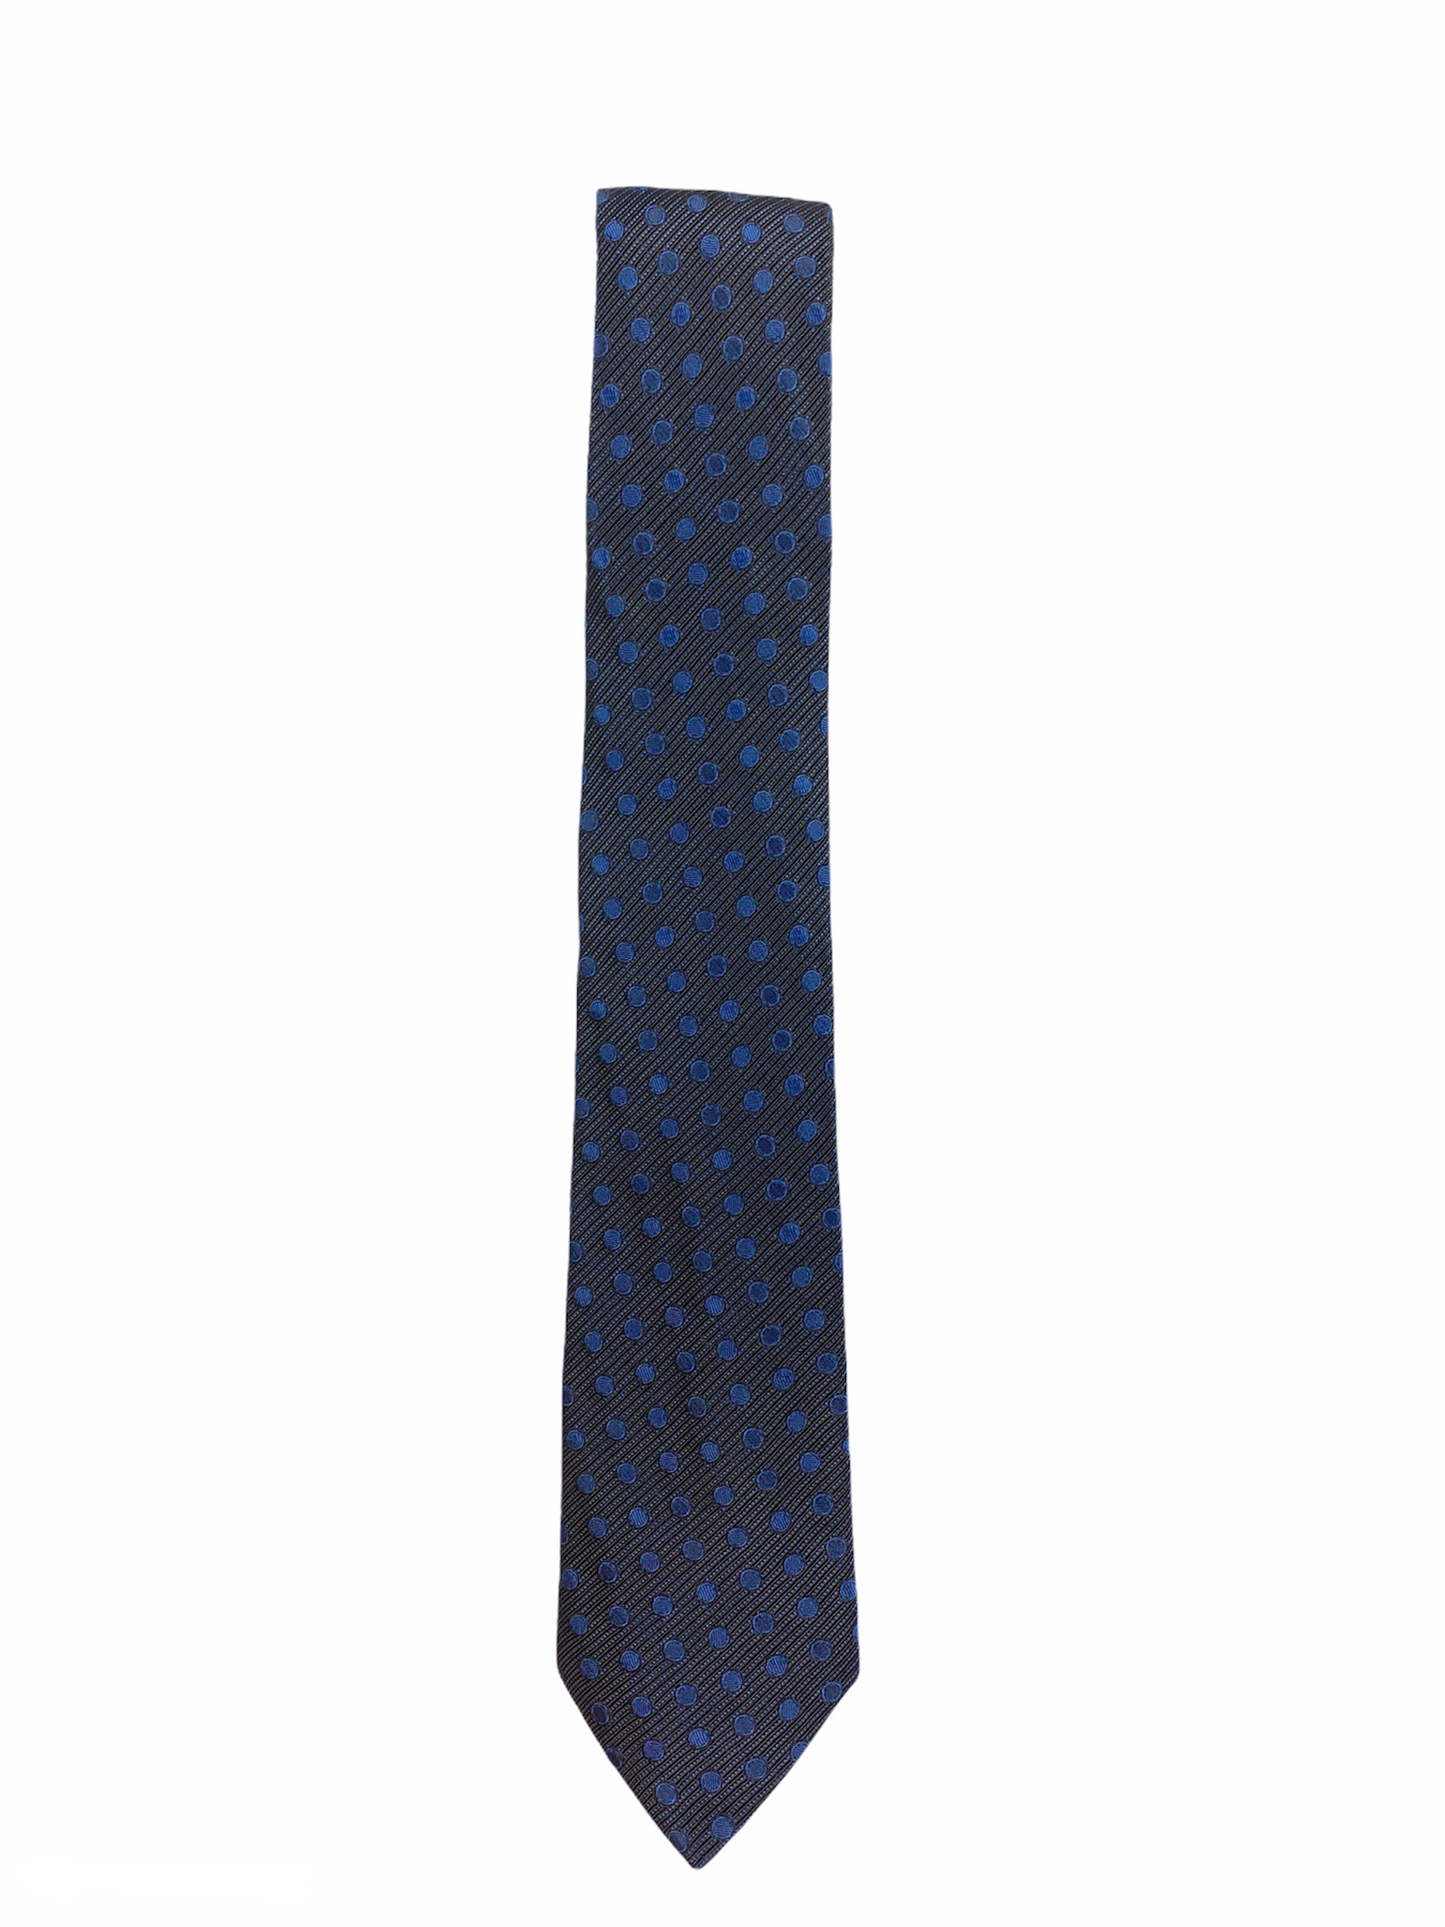 Cravate Agnès B en soie, Made in Italy, de couleur bleu marine à poids bleu roi.